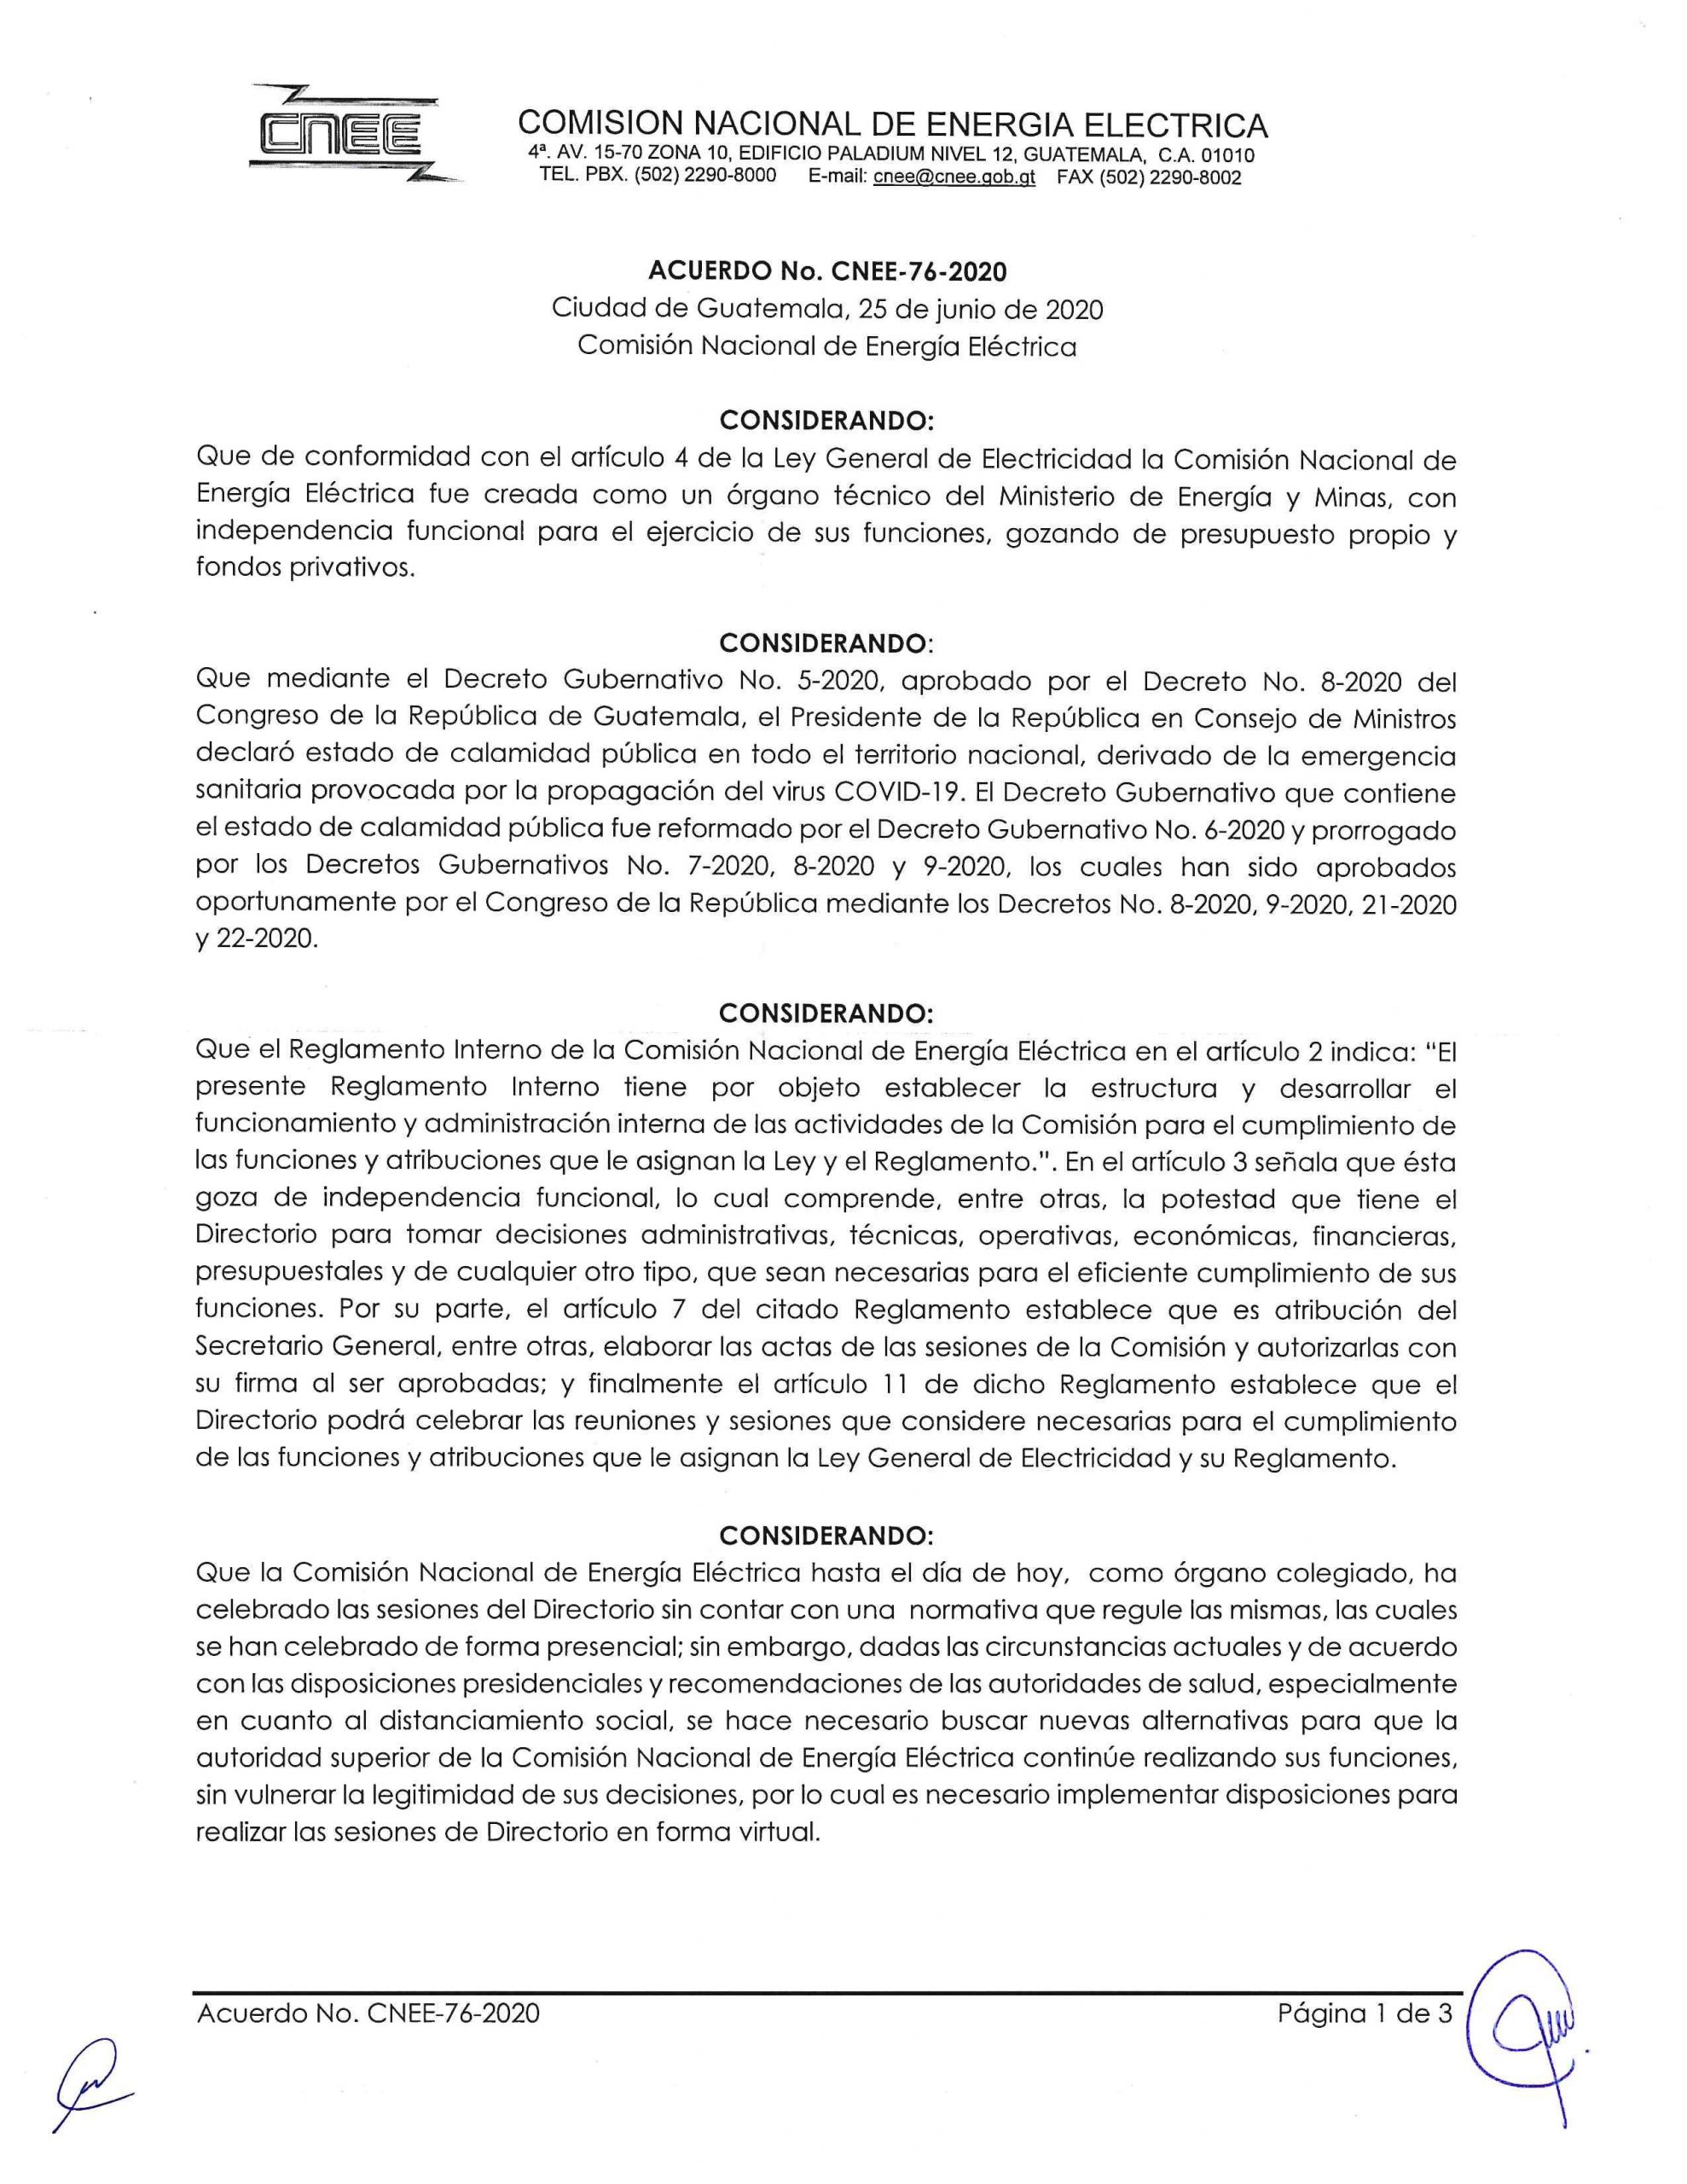 Acuerdo CNEE 76-2020, Disposiciones para reuniones presenciales y virtuales